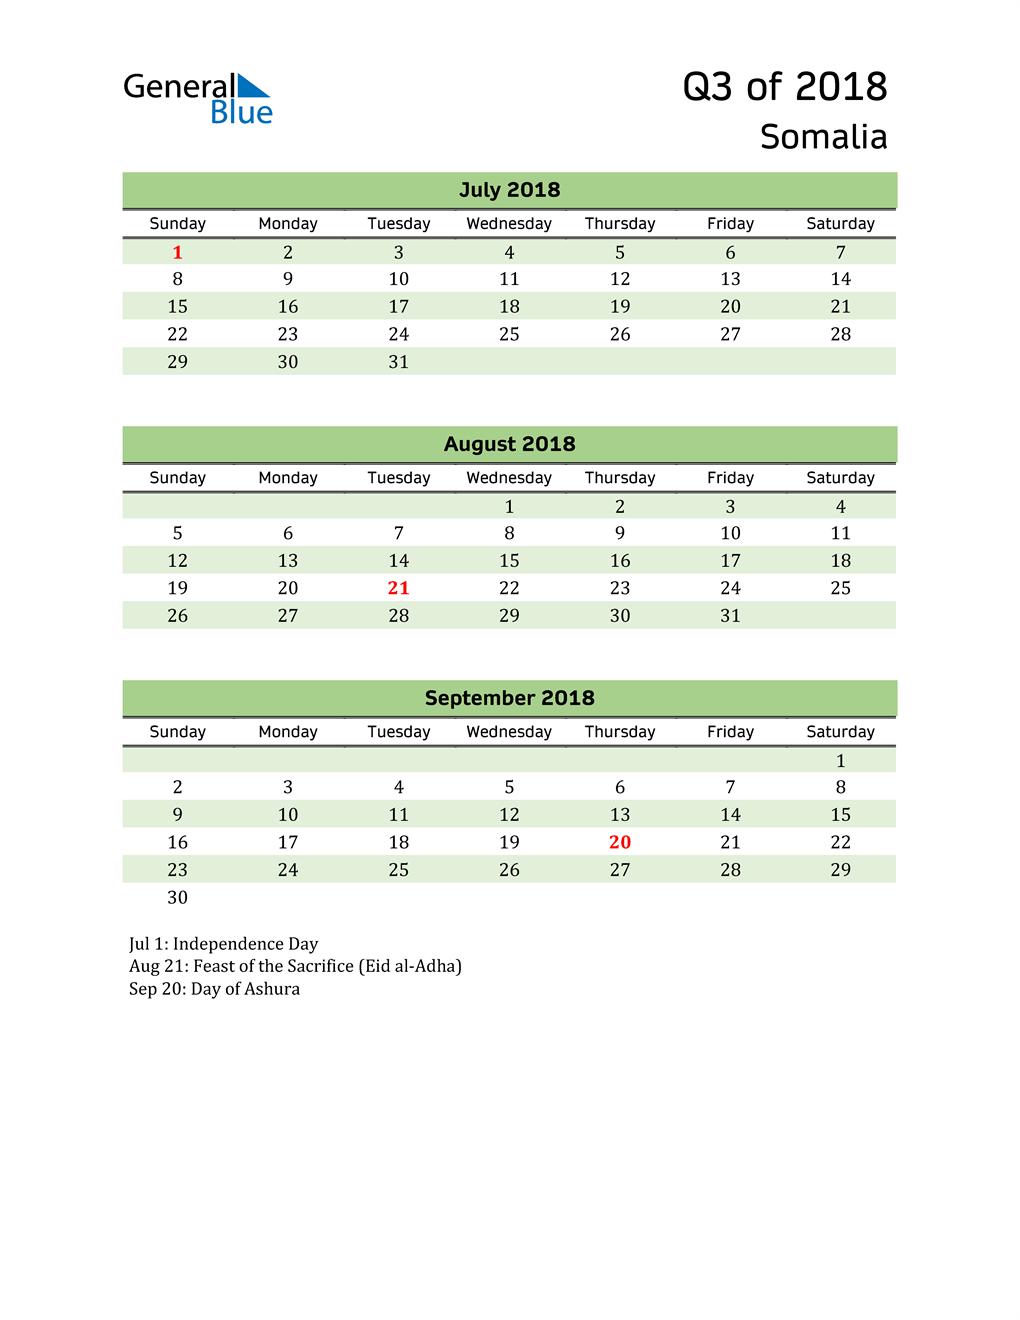  Quarterly Calendar 2018 with Somalia Holidays 